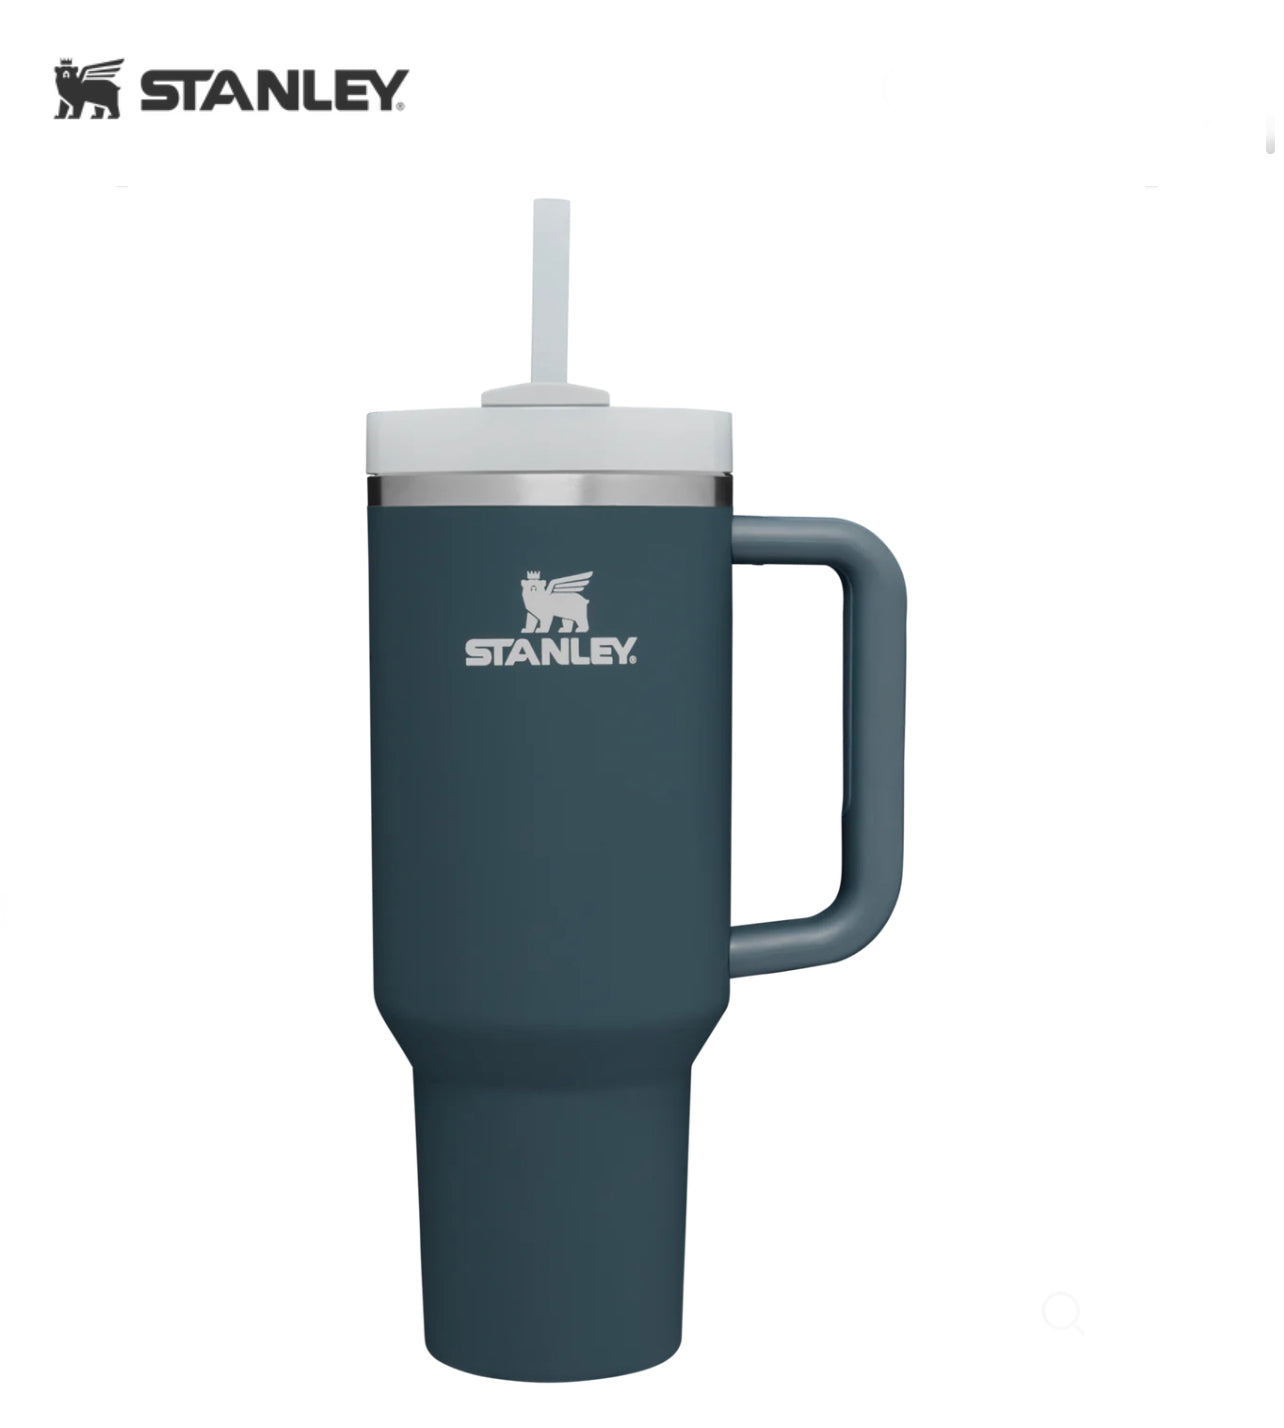 Bling Stanley cup  Bling, Stanley cup, Cup